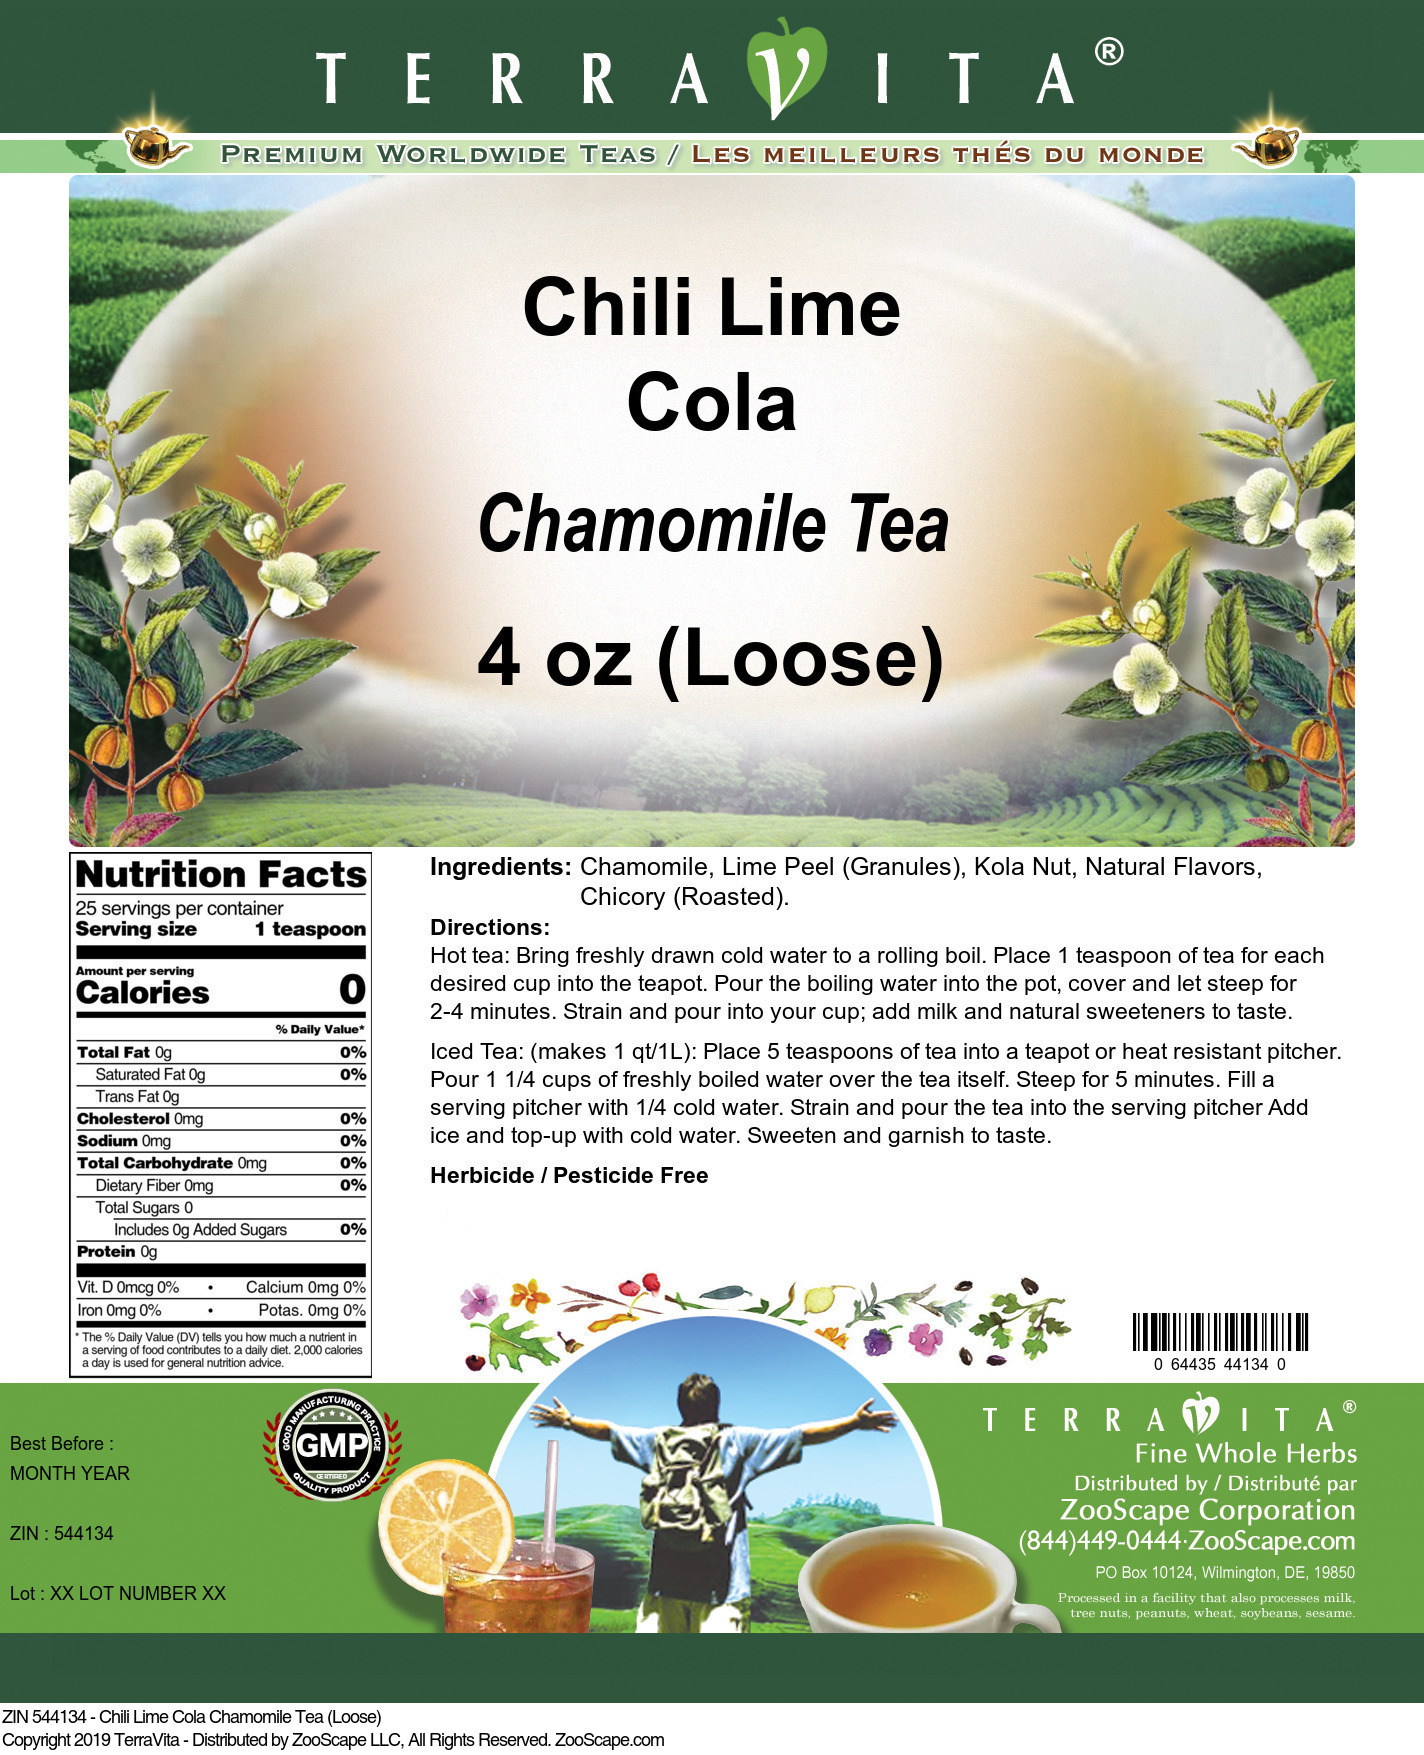 Chili Lime Cola Chamomile Tea (Loose) - Label